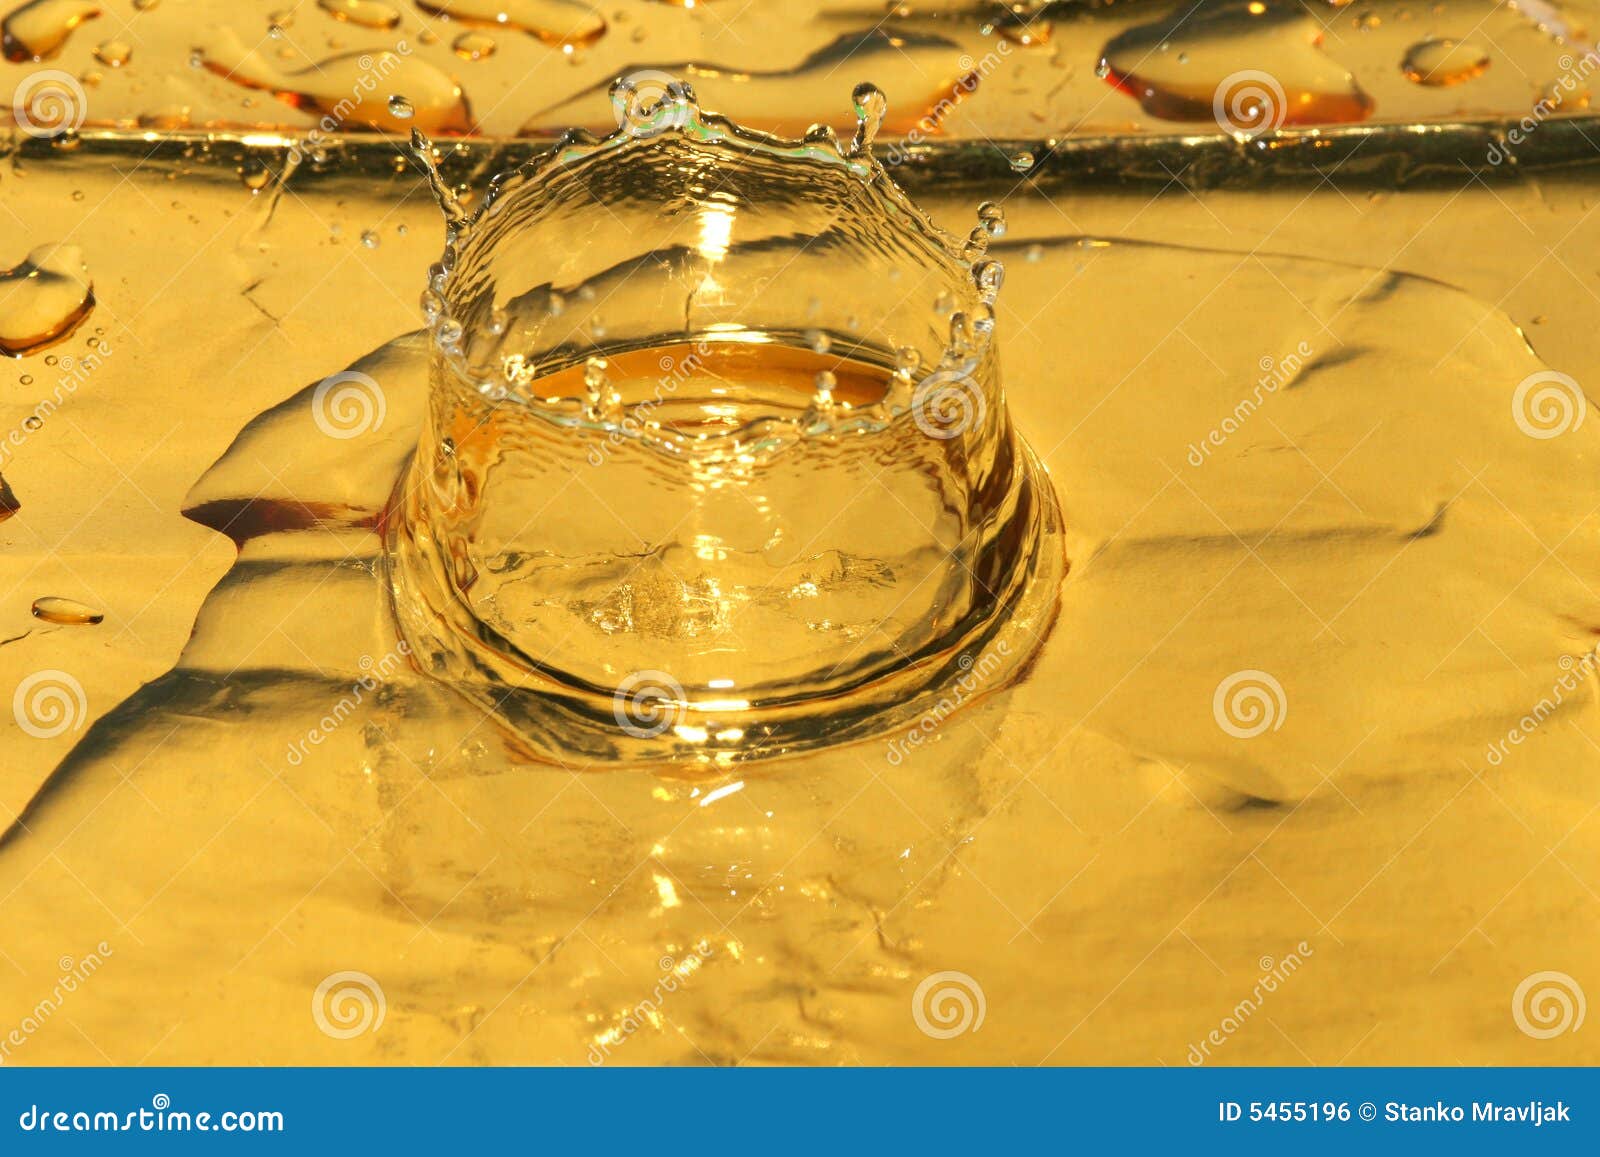 splash of yellow liquid